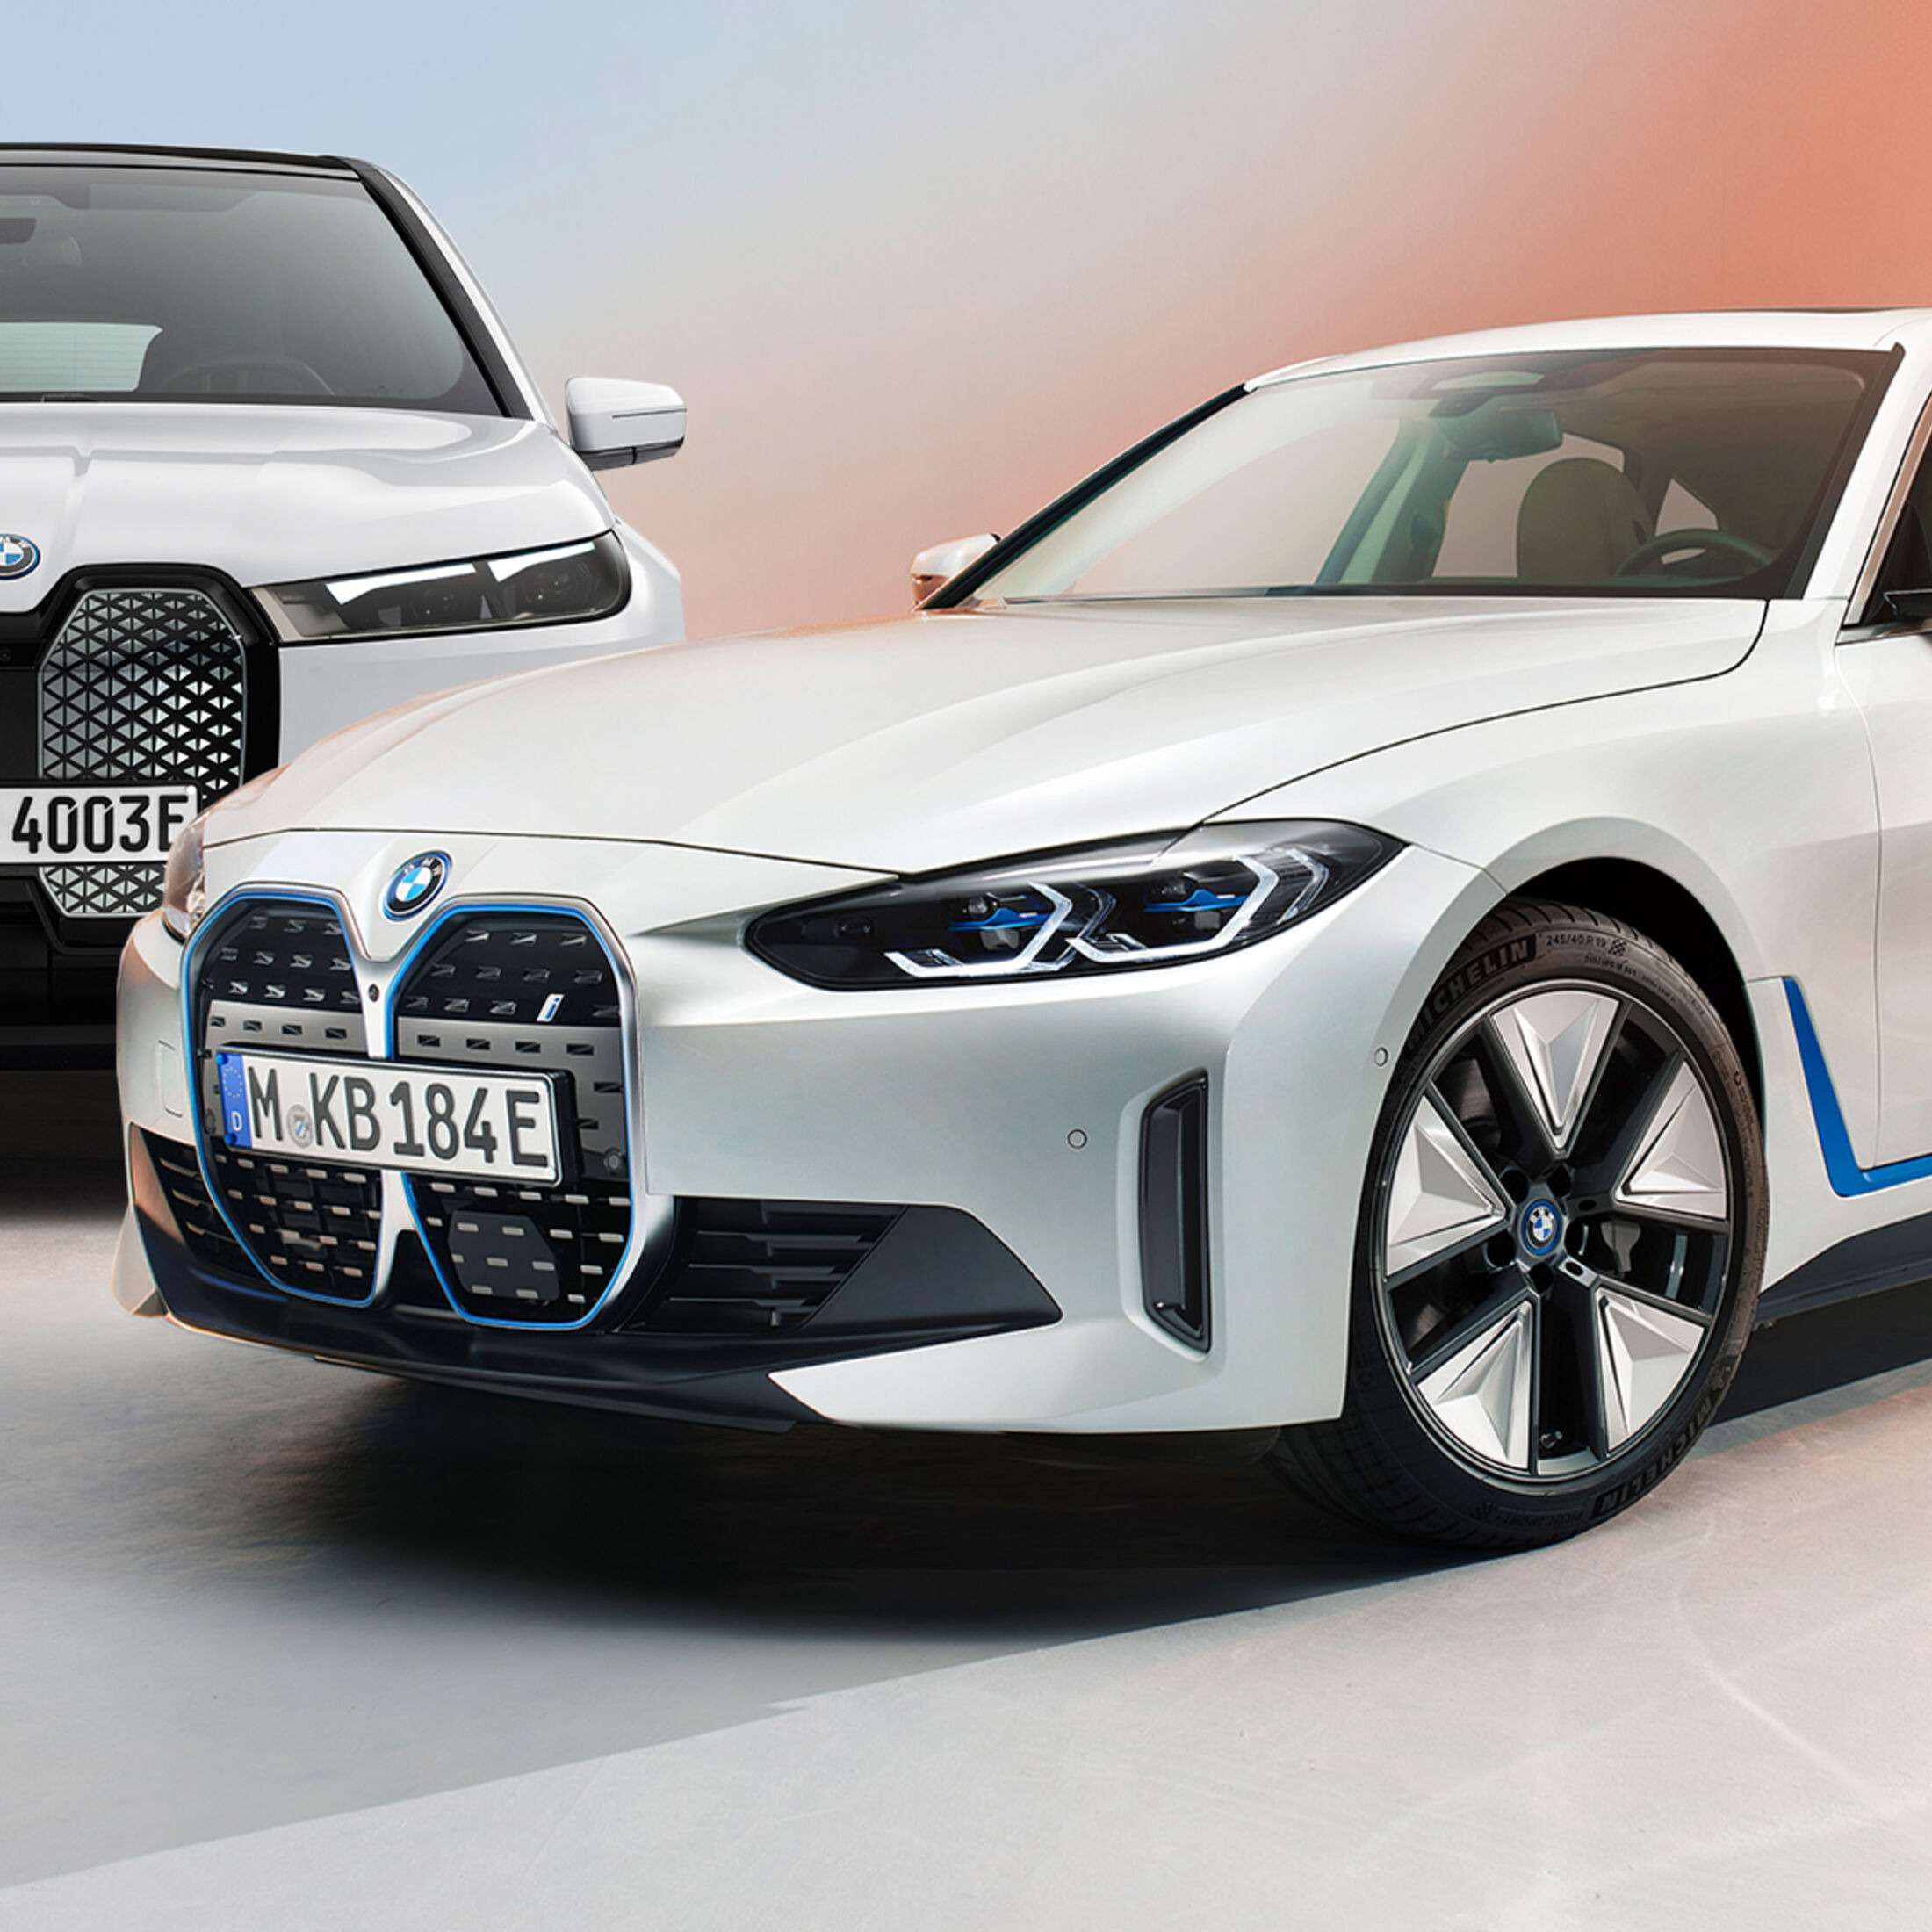 BMW 3er: So sieht das wichtigste Modell des Auto-Konzerns nach dem Facelift  aus